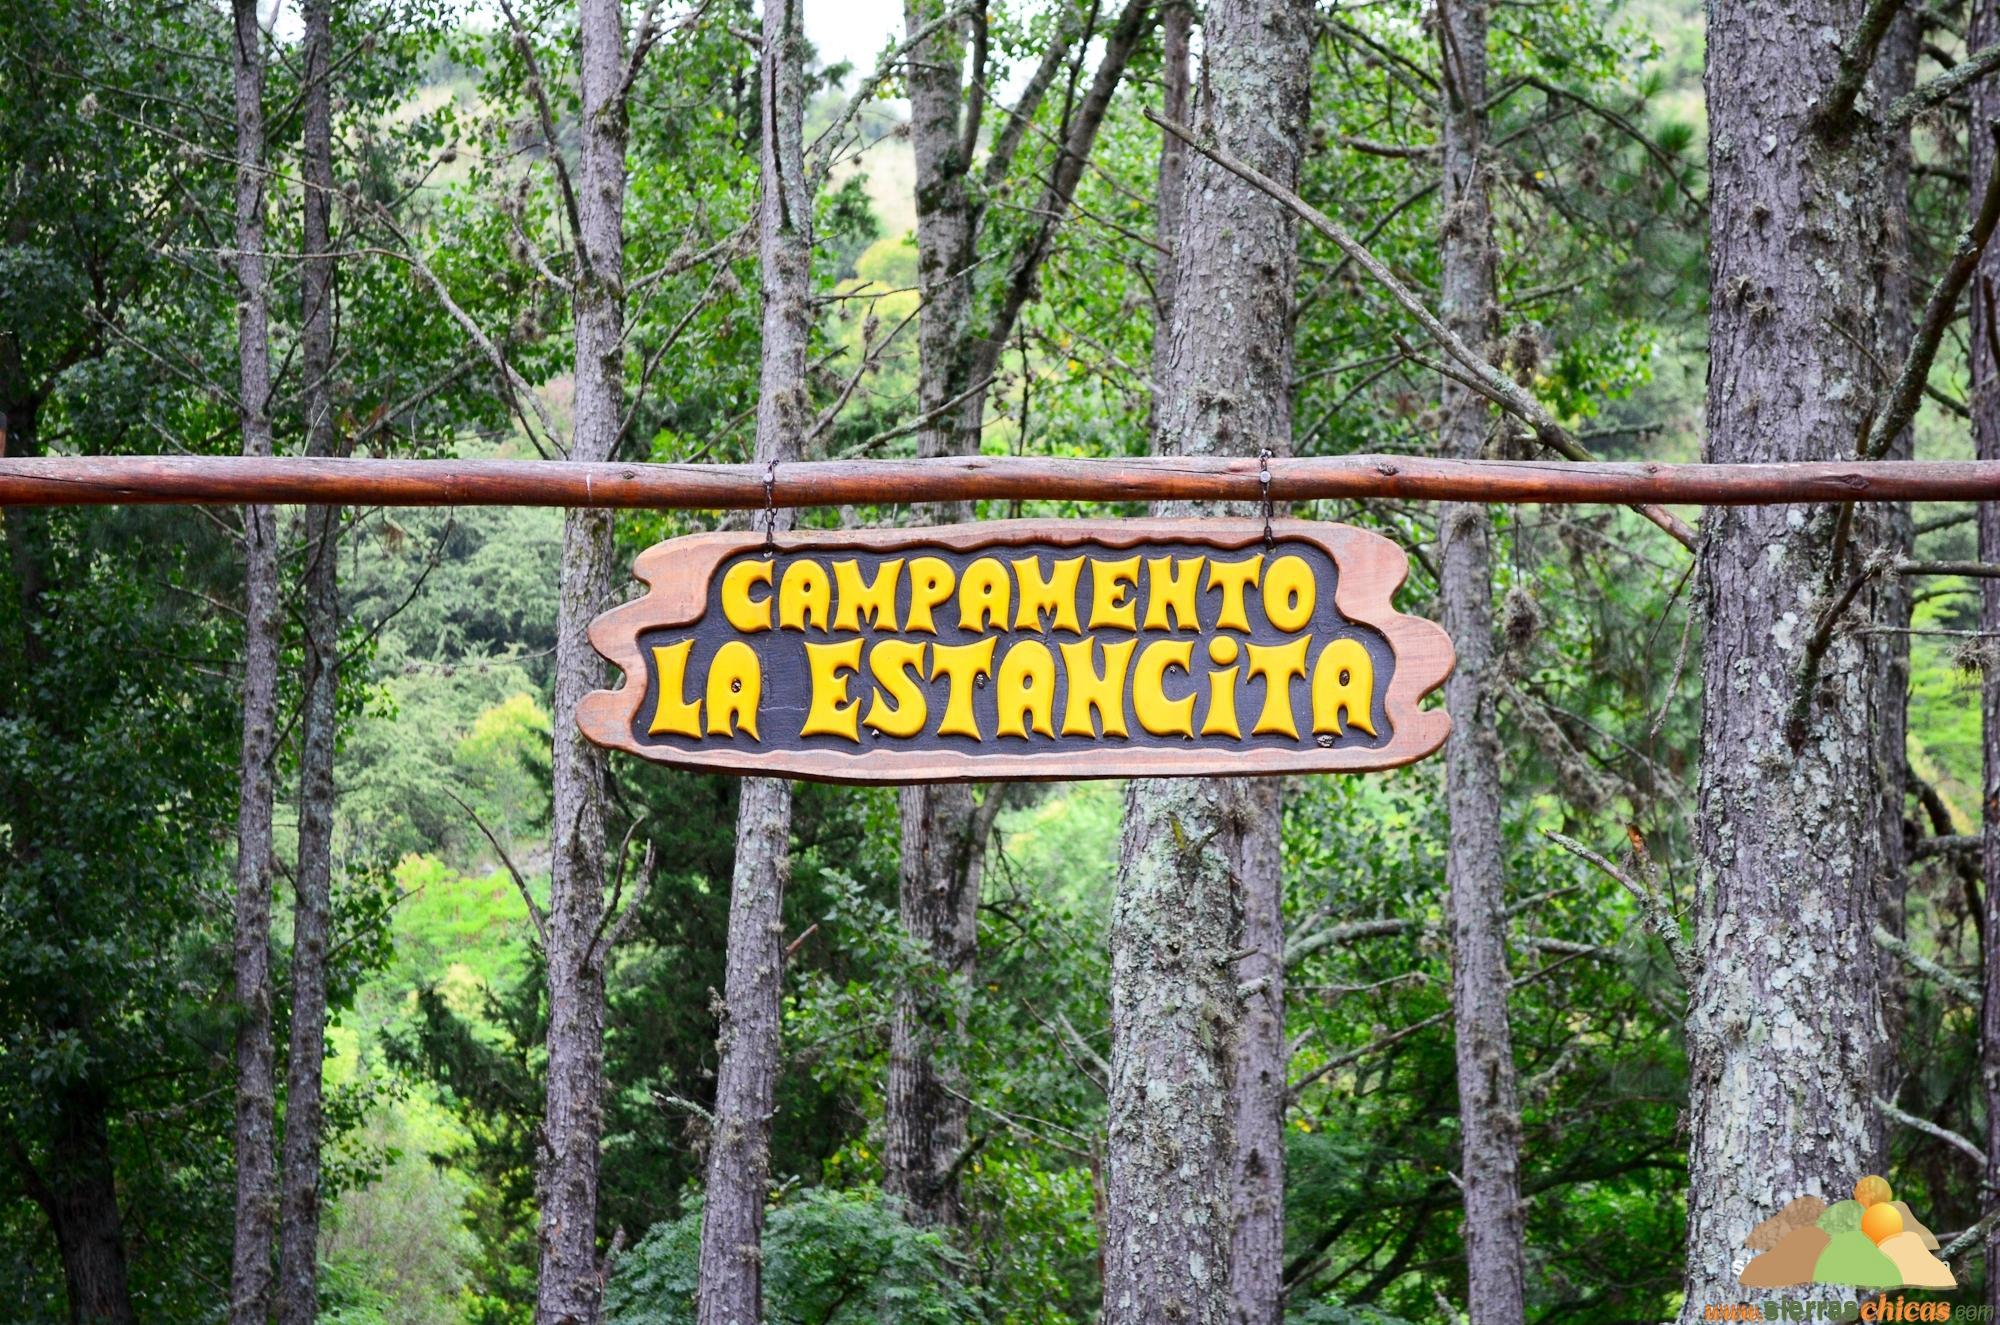 Campamento La Estancita, Río Ceballos